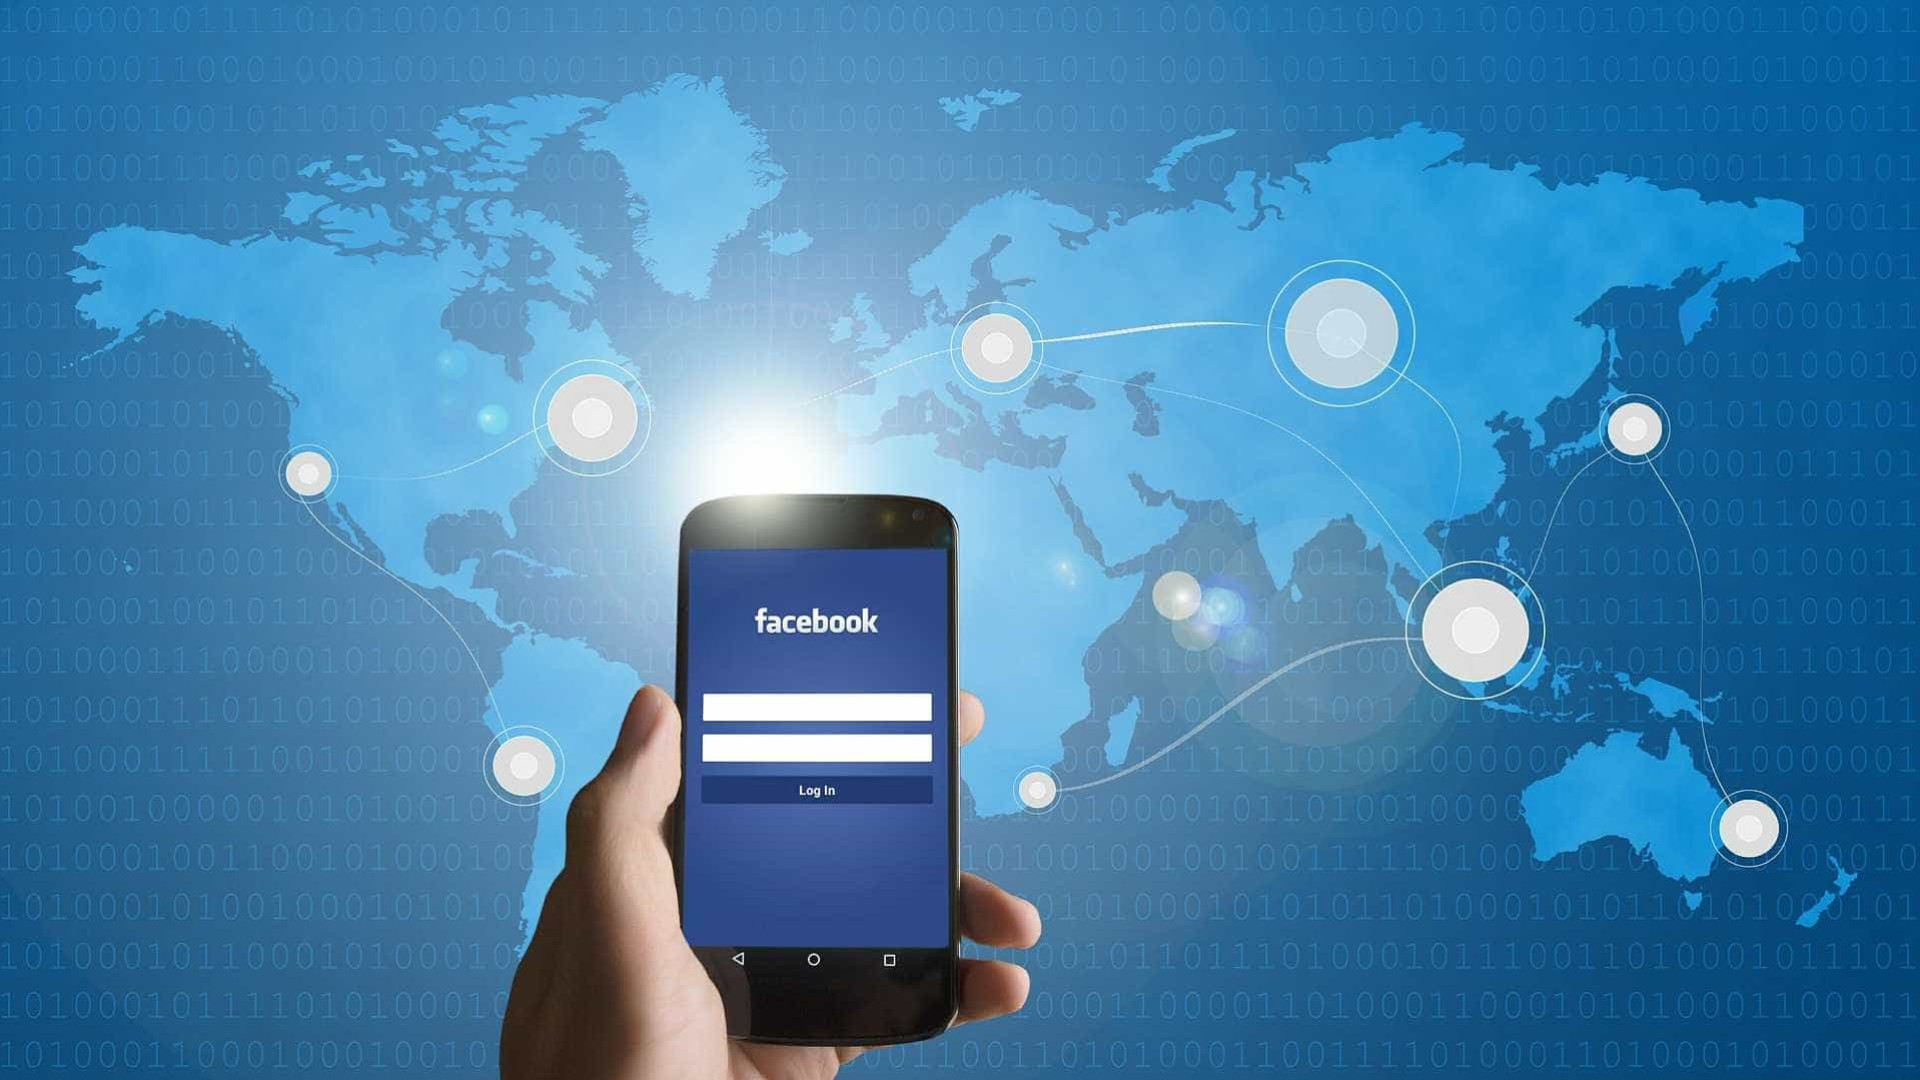 União Europeia pode obrigar Facebook a apagar publicações difamatórias